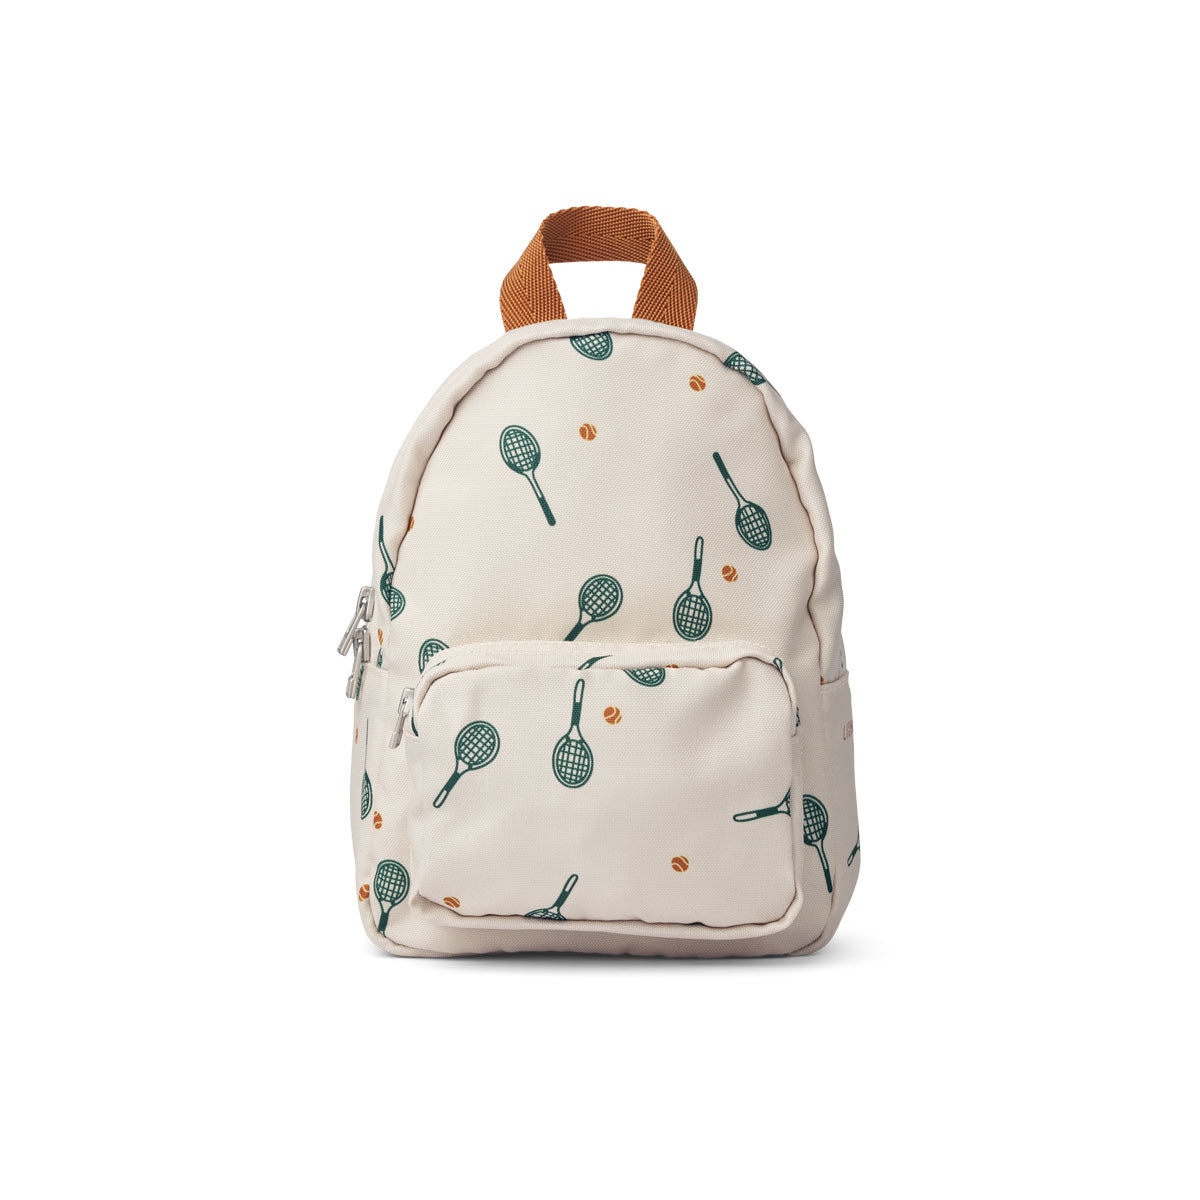 Saxo Mini backpack Bag LW14920